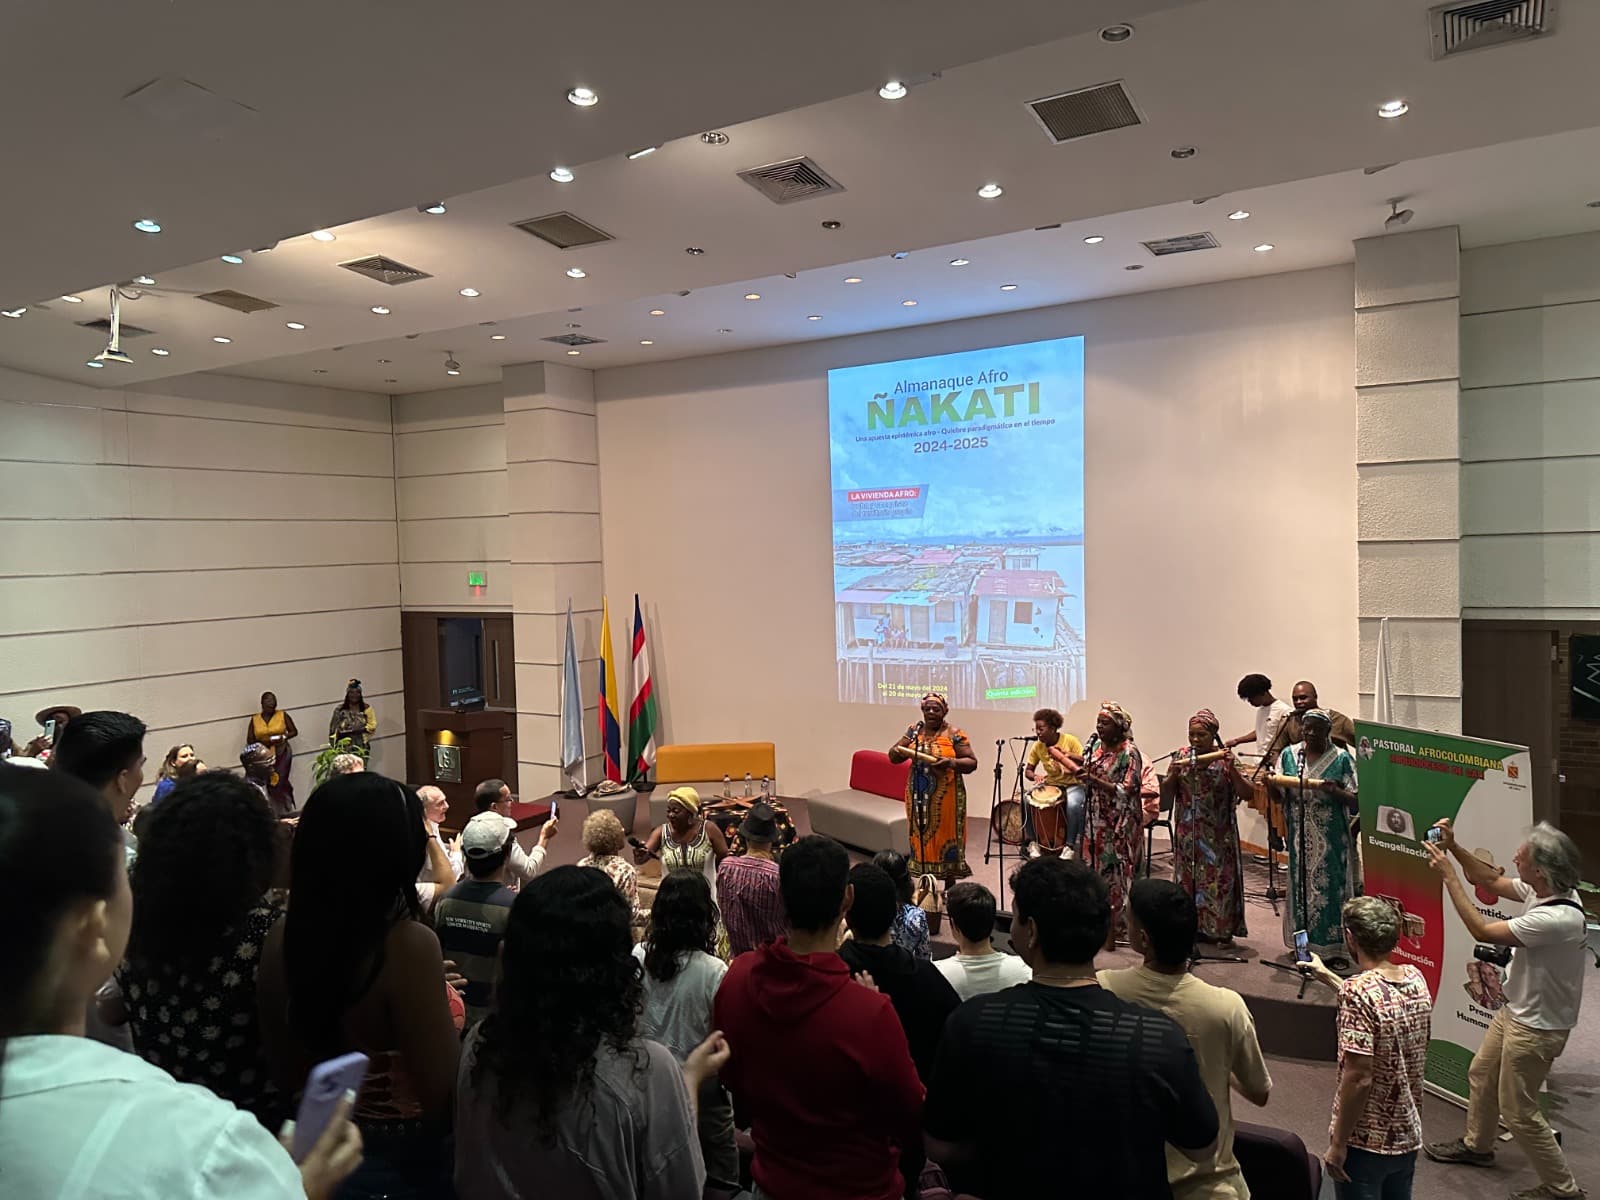 Almanaque Ñakiti fue lanzado en la II cátedra afrocolombiana en la UAO